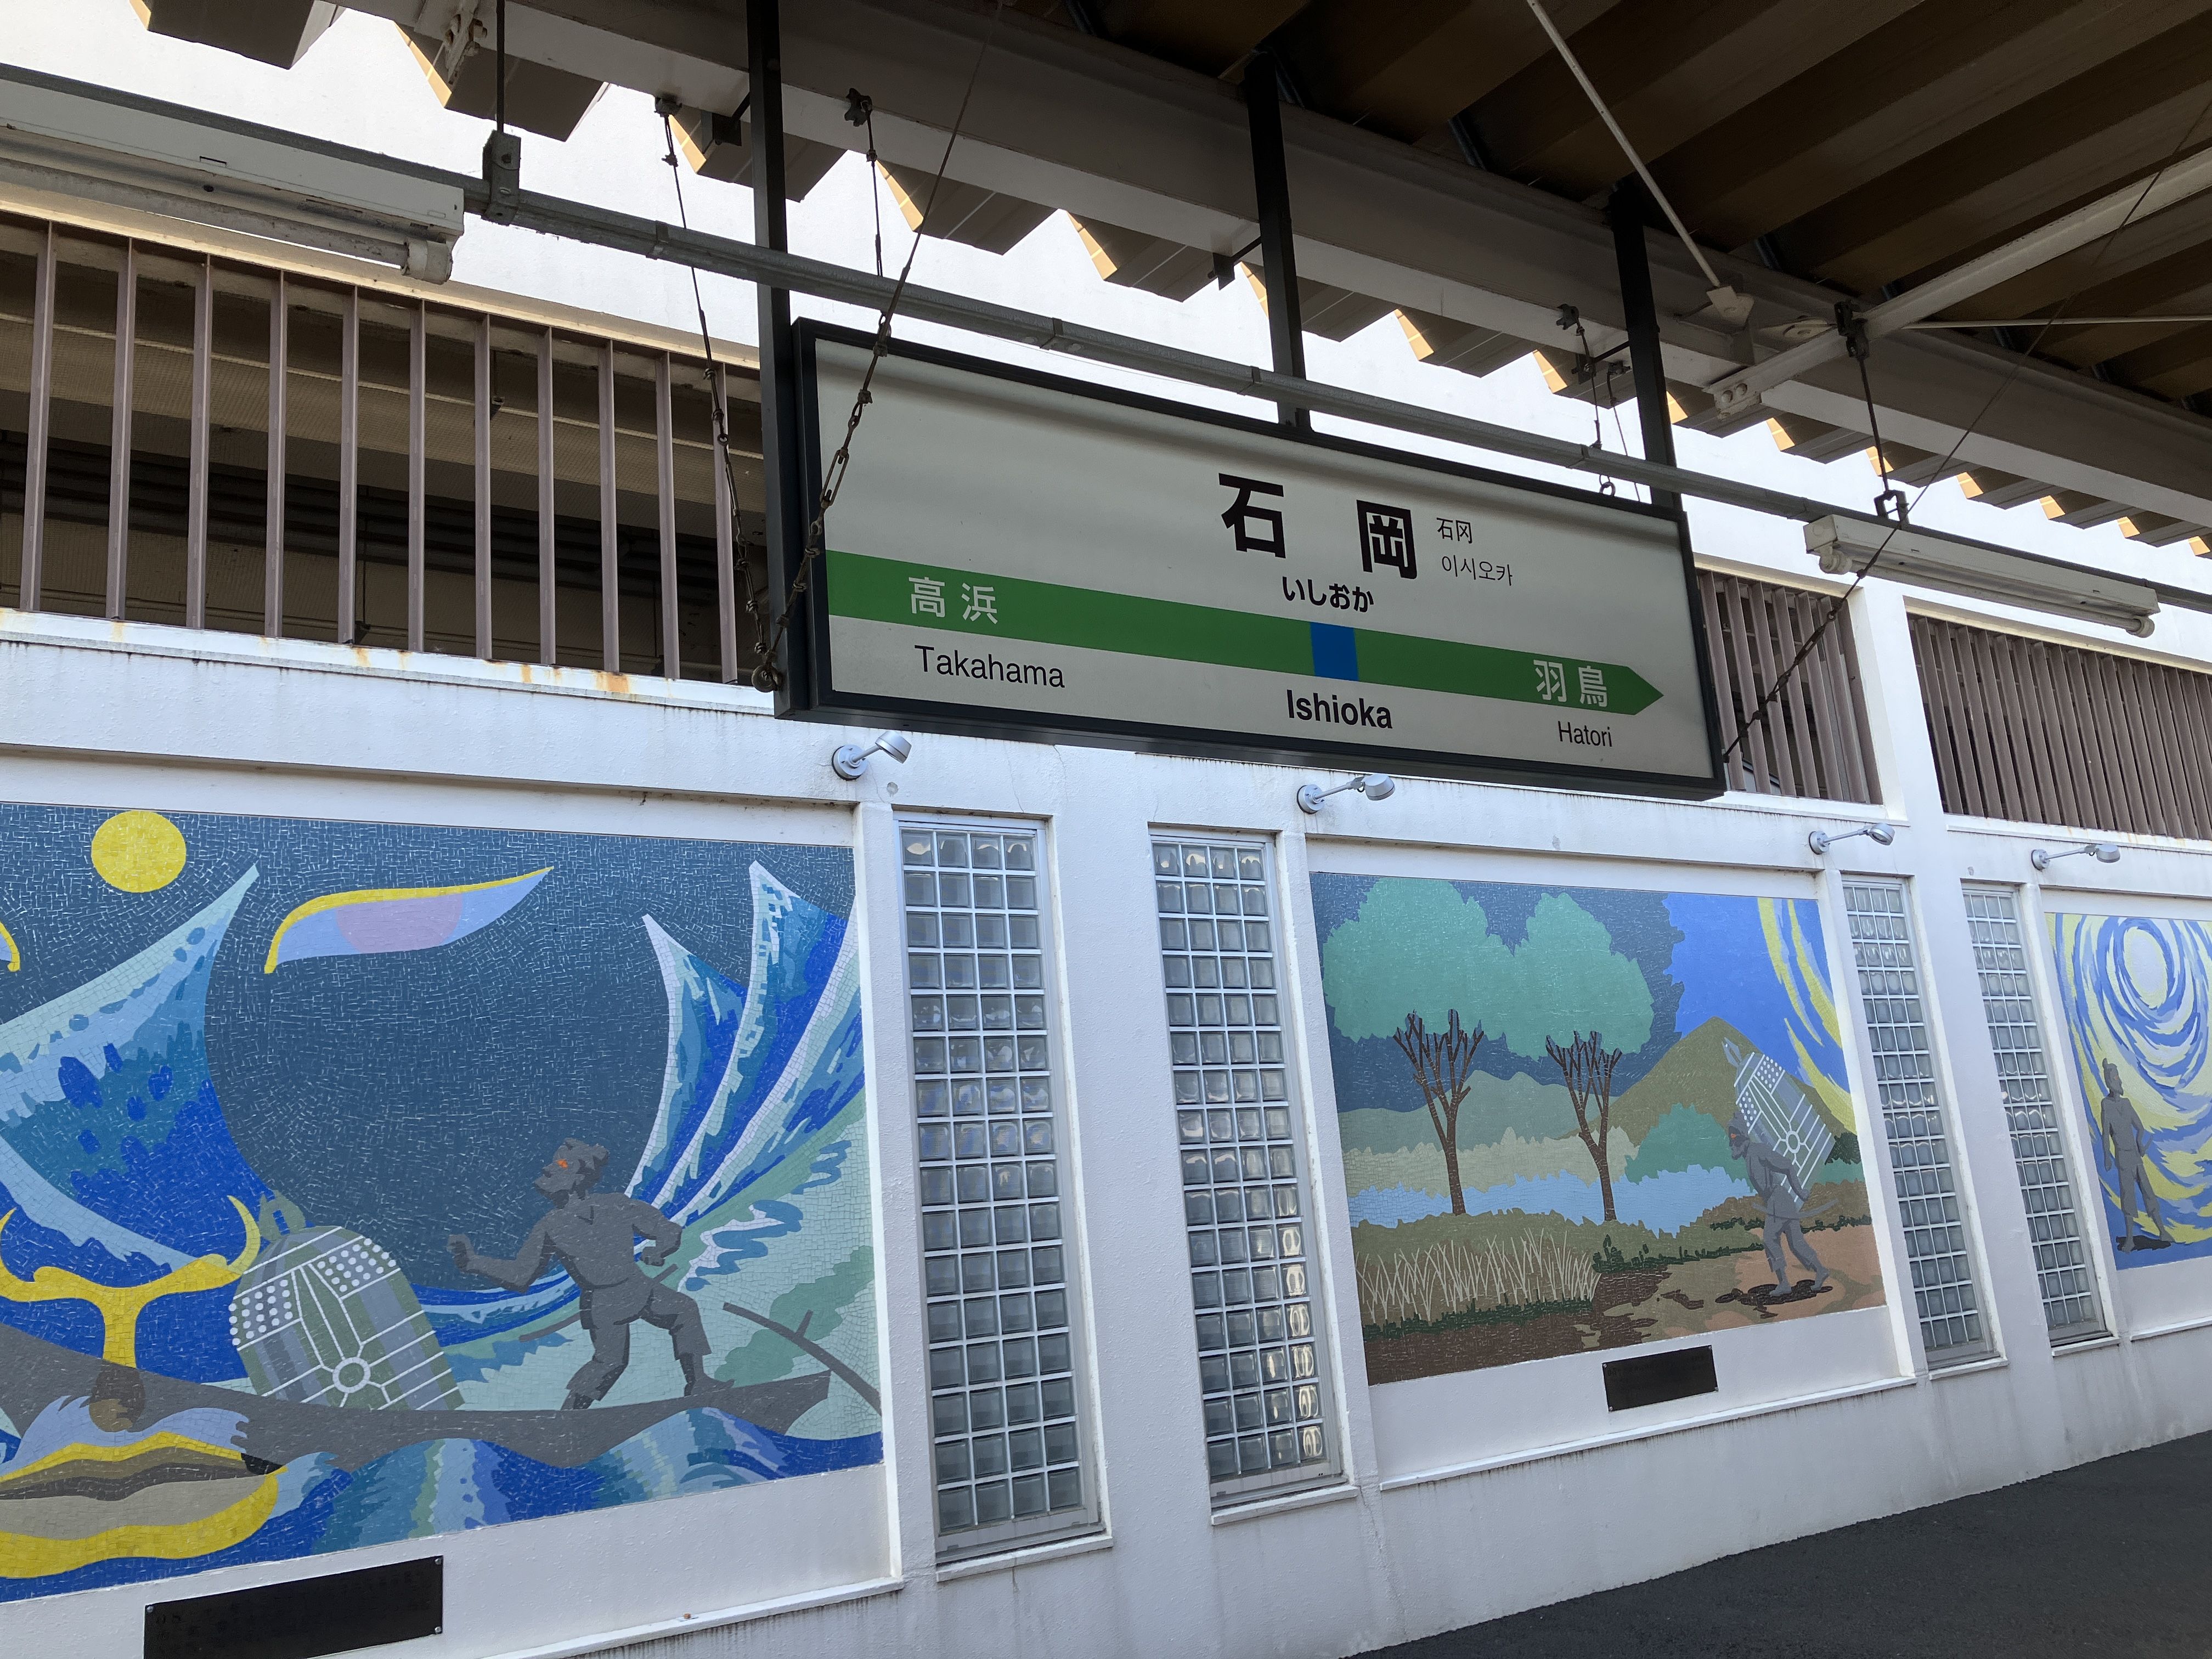 特急ときわでJR常磐線石岡駅に到着した